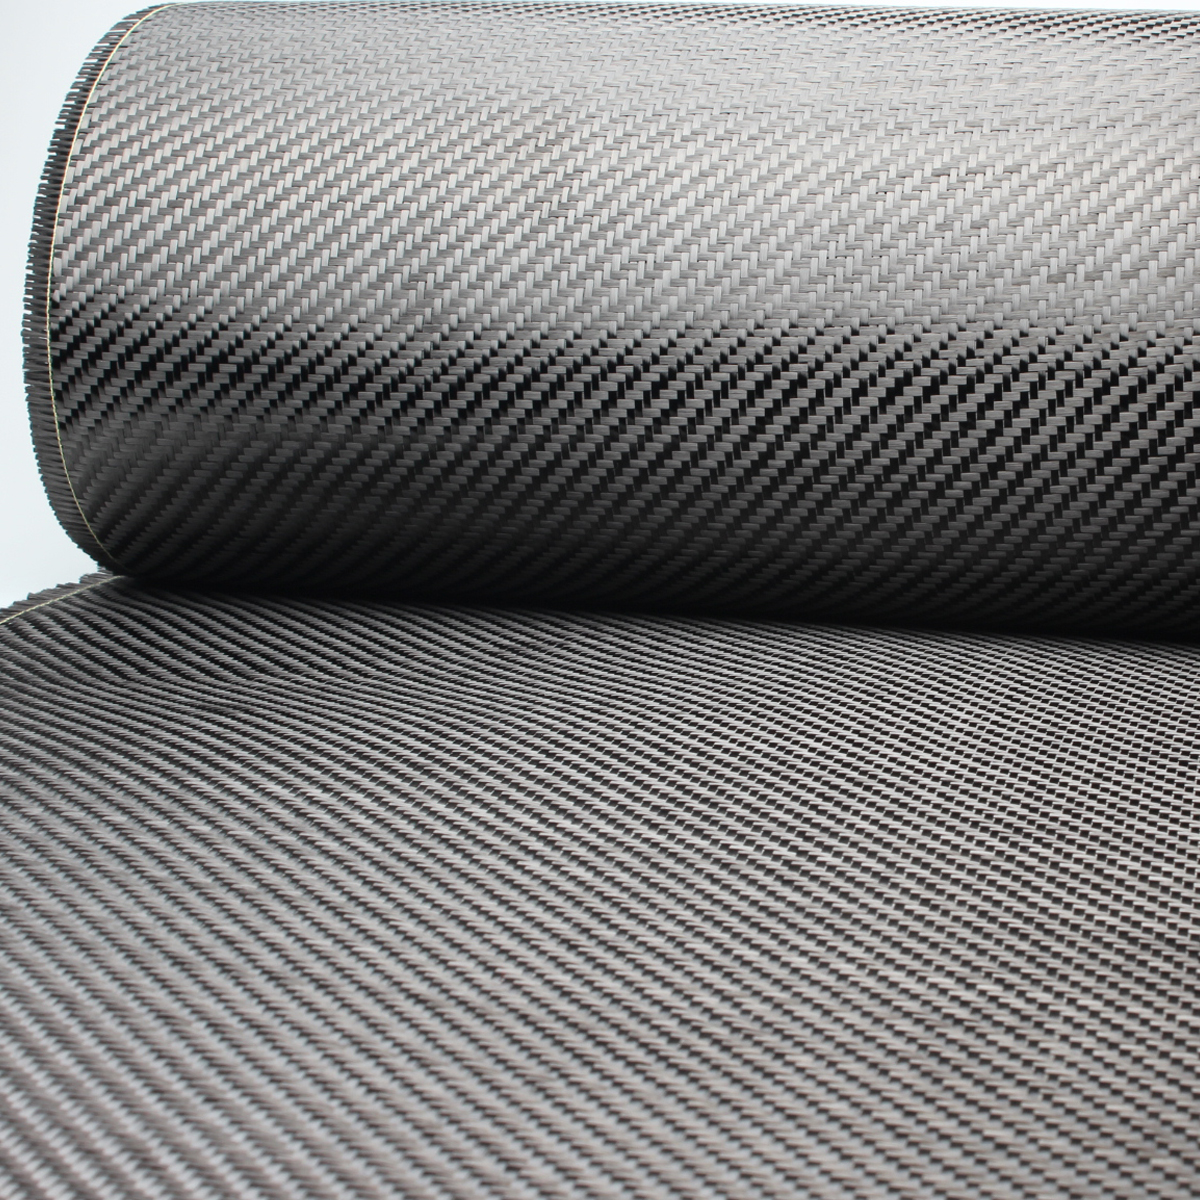 B grade 3K 200gsm Carbon Fiber Fabric For Skateboard Inner Layer